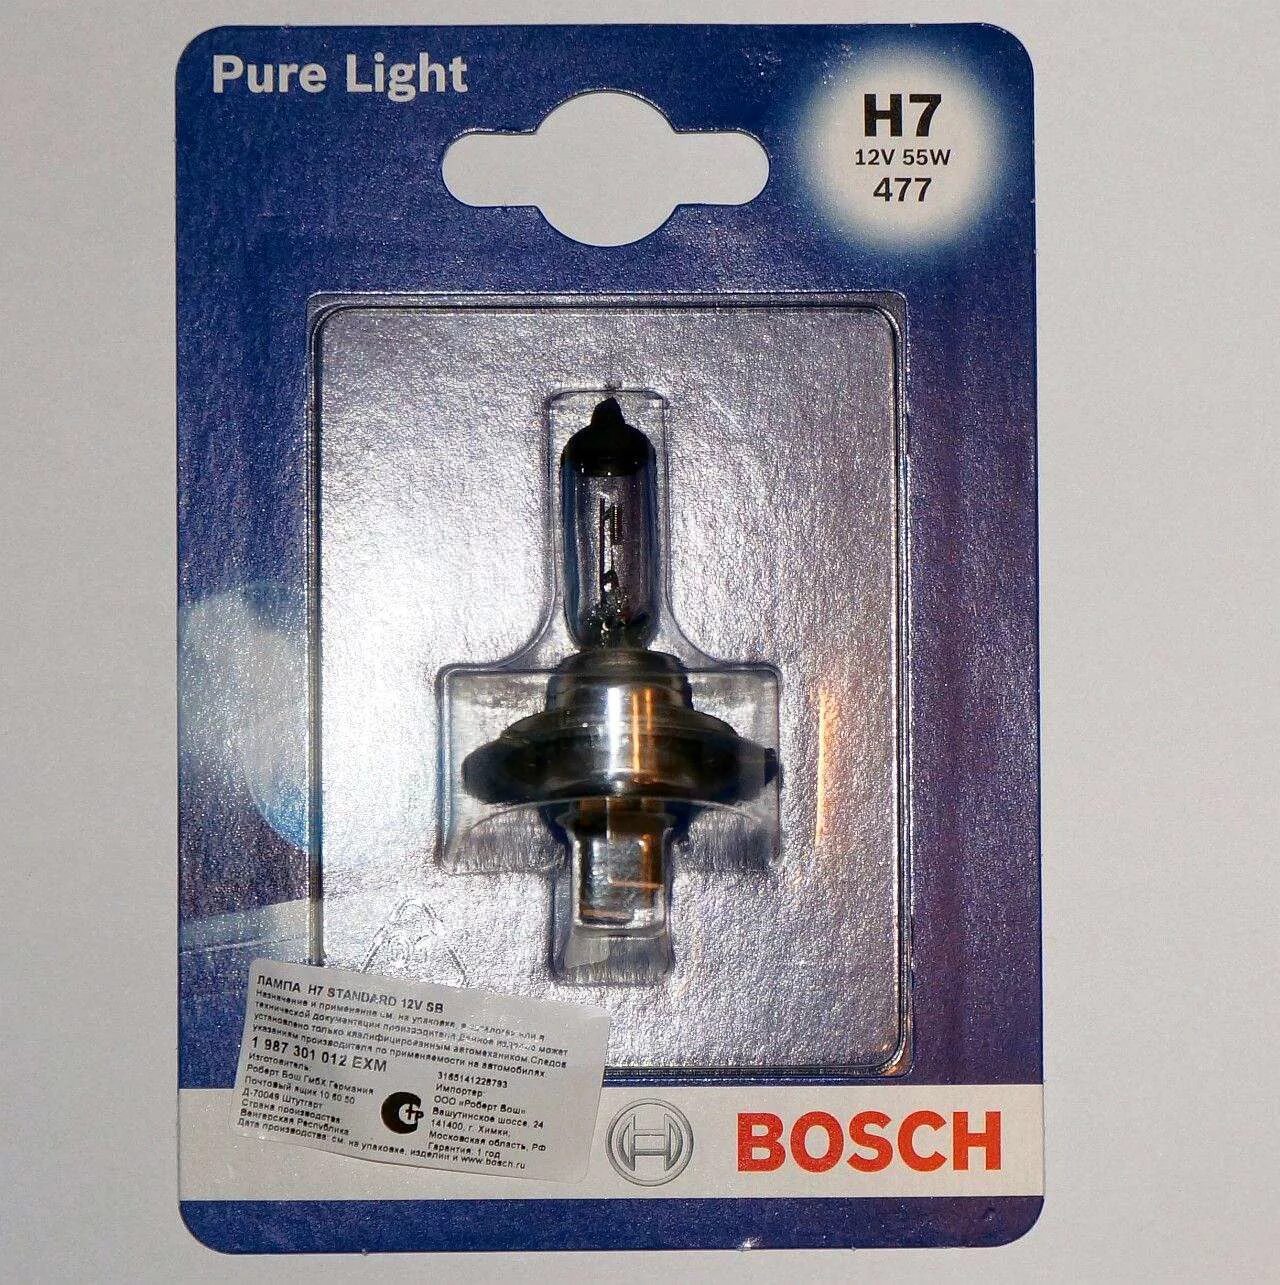 Bosch h7 12v 55w. Bosch Pure Light h7 12v 55w. Bosch h7-12-55 Pure Light. Лампы Bosch h4 Pure Light. Лампа галогенная Bosch h7 Pure Light 12v 55w,.